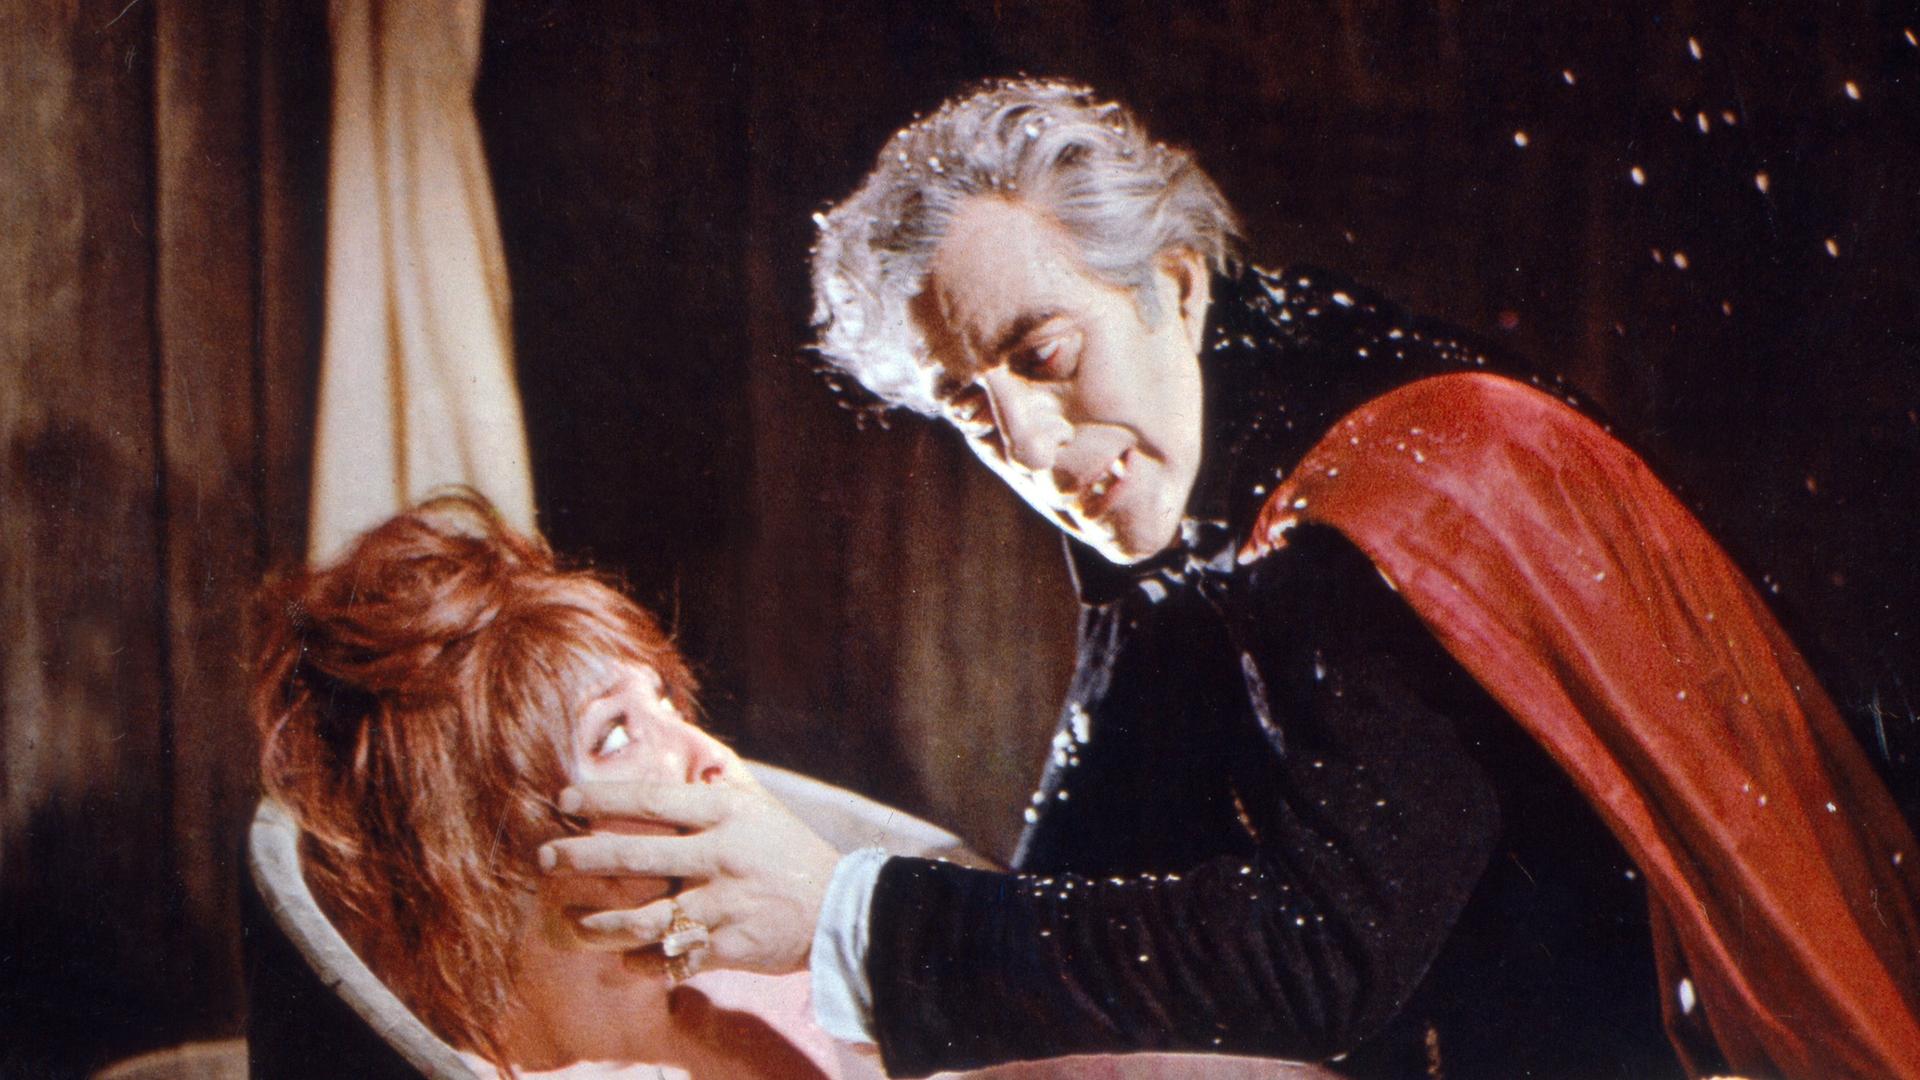 Szene au dem Film von Roman Polanski "Tanz der Vampire", in der Dracula (Ferdy Maine) über eine junge Frau (Sahron Tate) in der Badewanne herfällt.